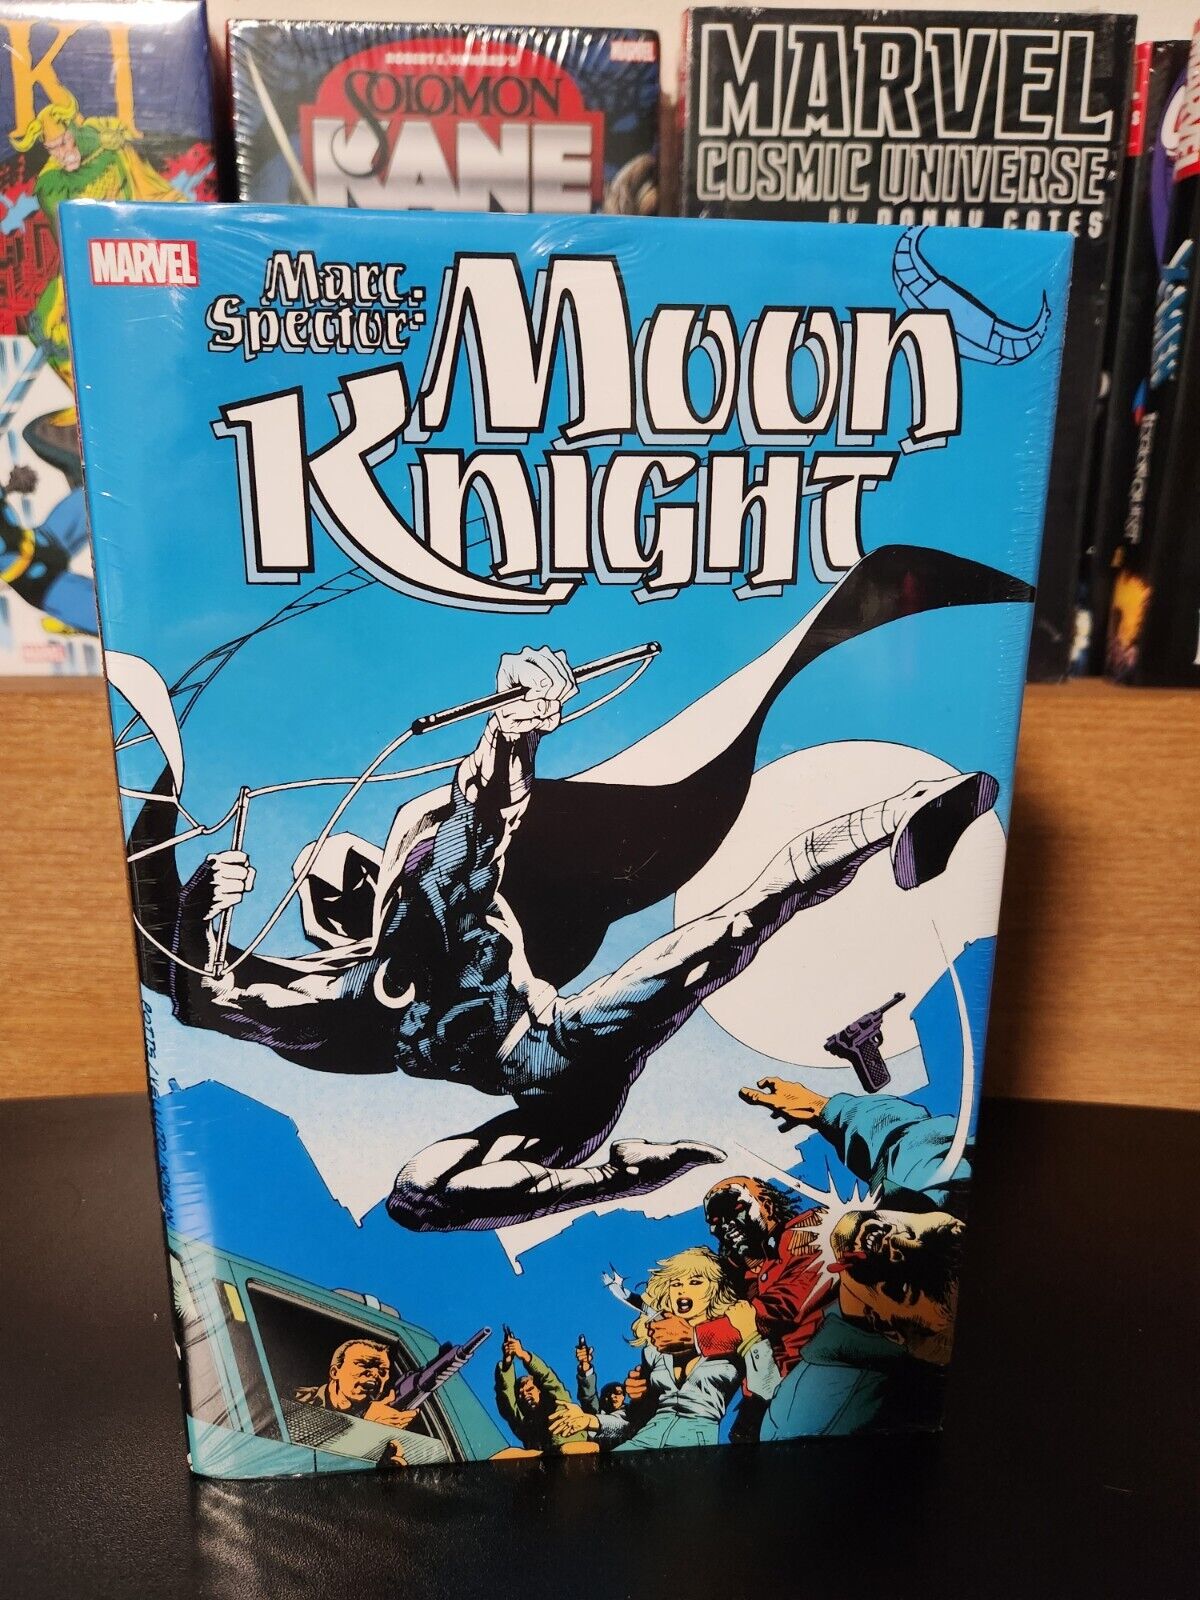 *NEW & SEALED* Marc Spector: Moon Knight Omnibus Vol. 1 Marvel Comics DM Variant